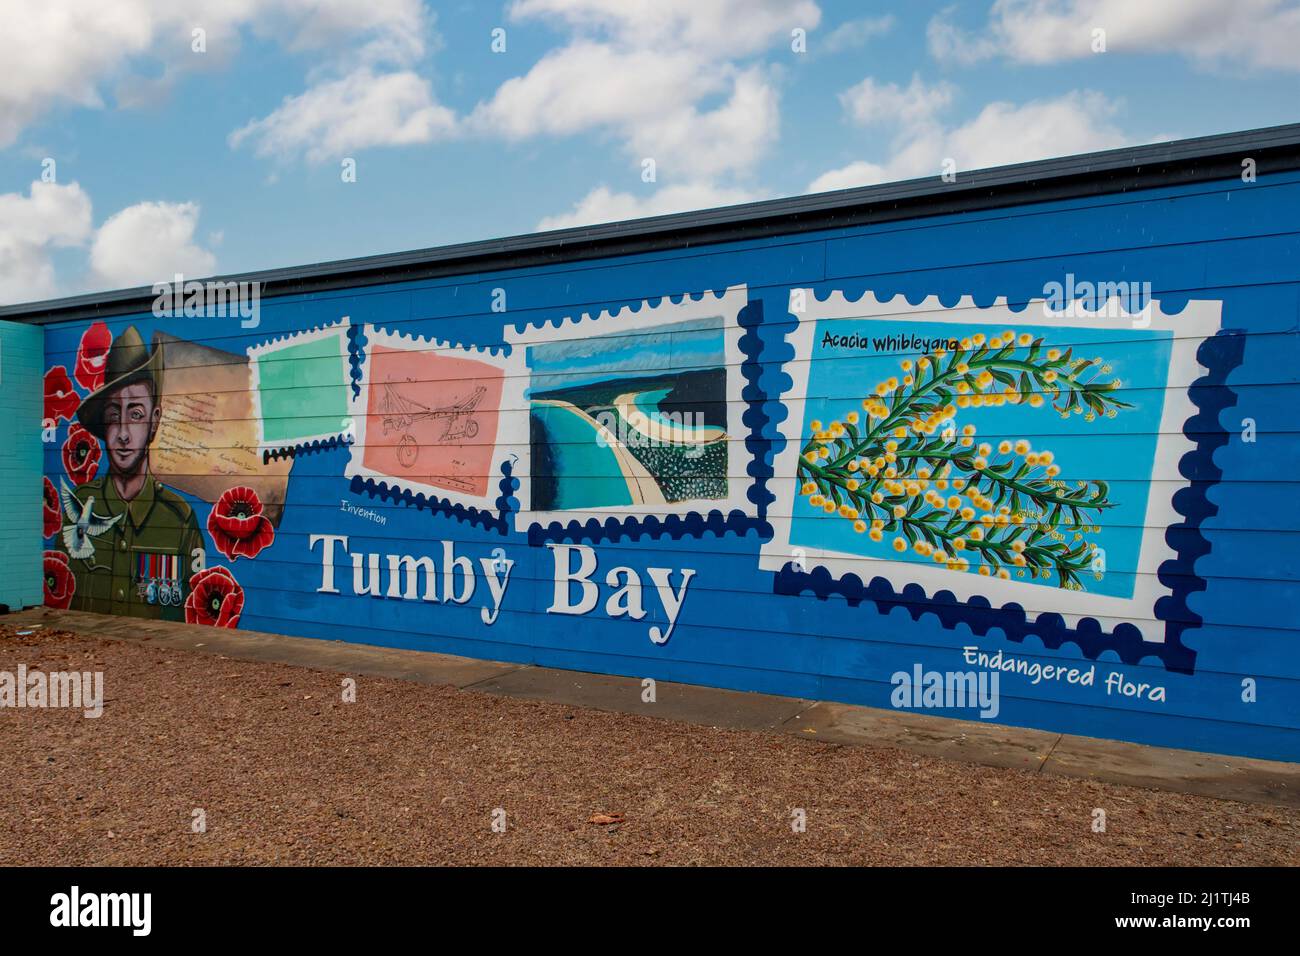 Postage Stamps Street Art, Tumby Bay, South Australia, Australia Stock Photo